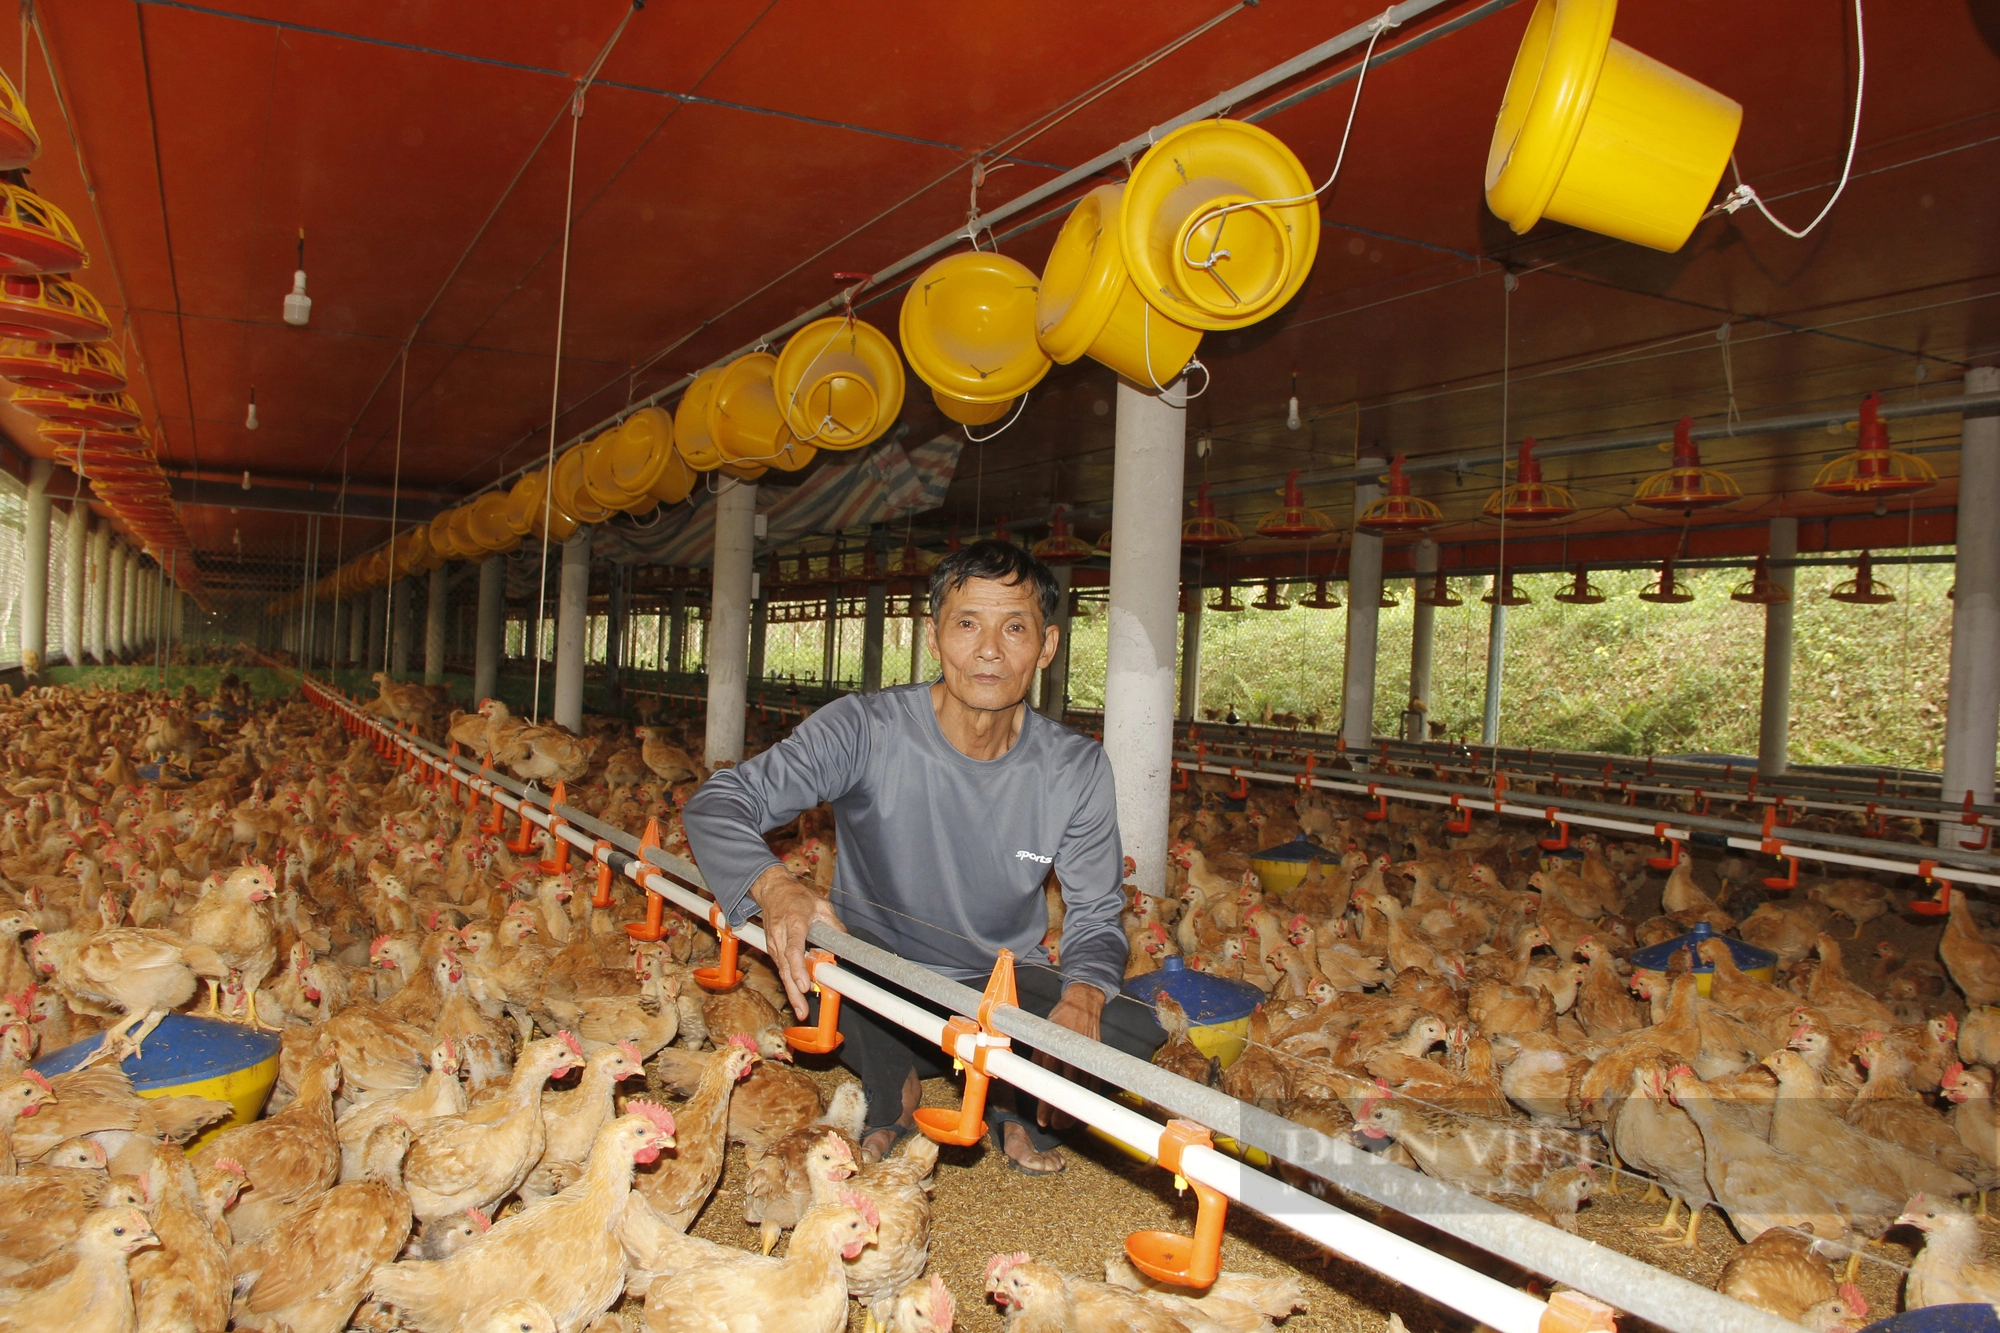 Nuôi 4 vạn con gà, người đàn ông 66 tuổi ở Quảng Trị lãi 600 triệu đồng mỗi năm - Ảnh 4.